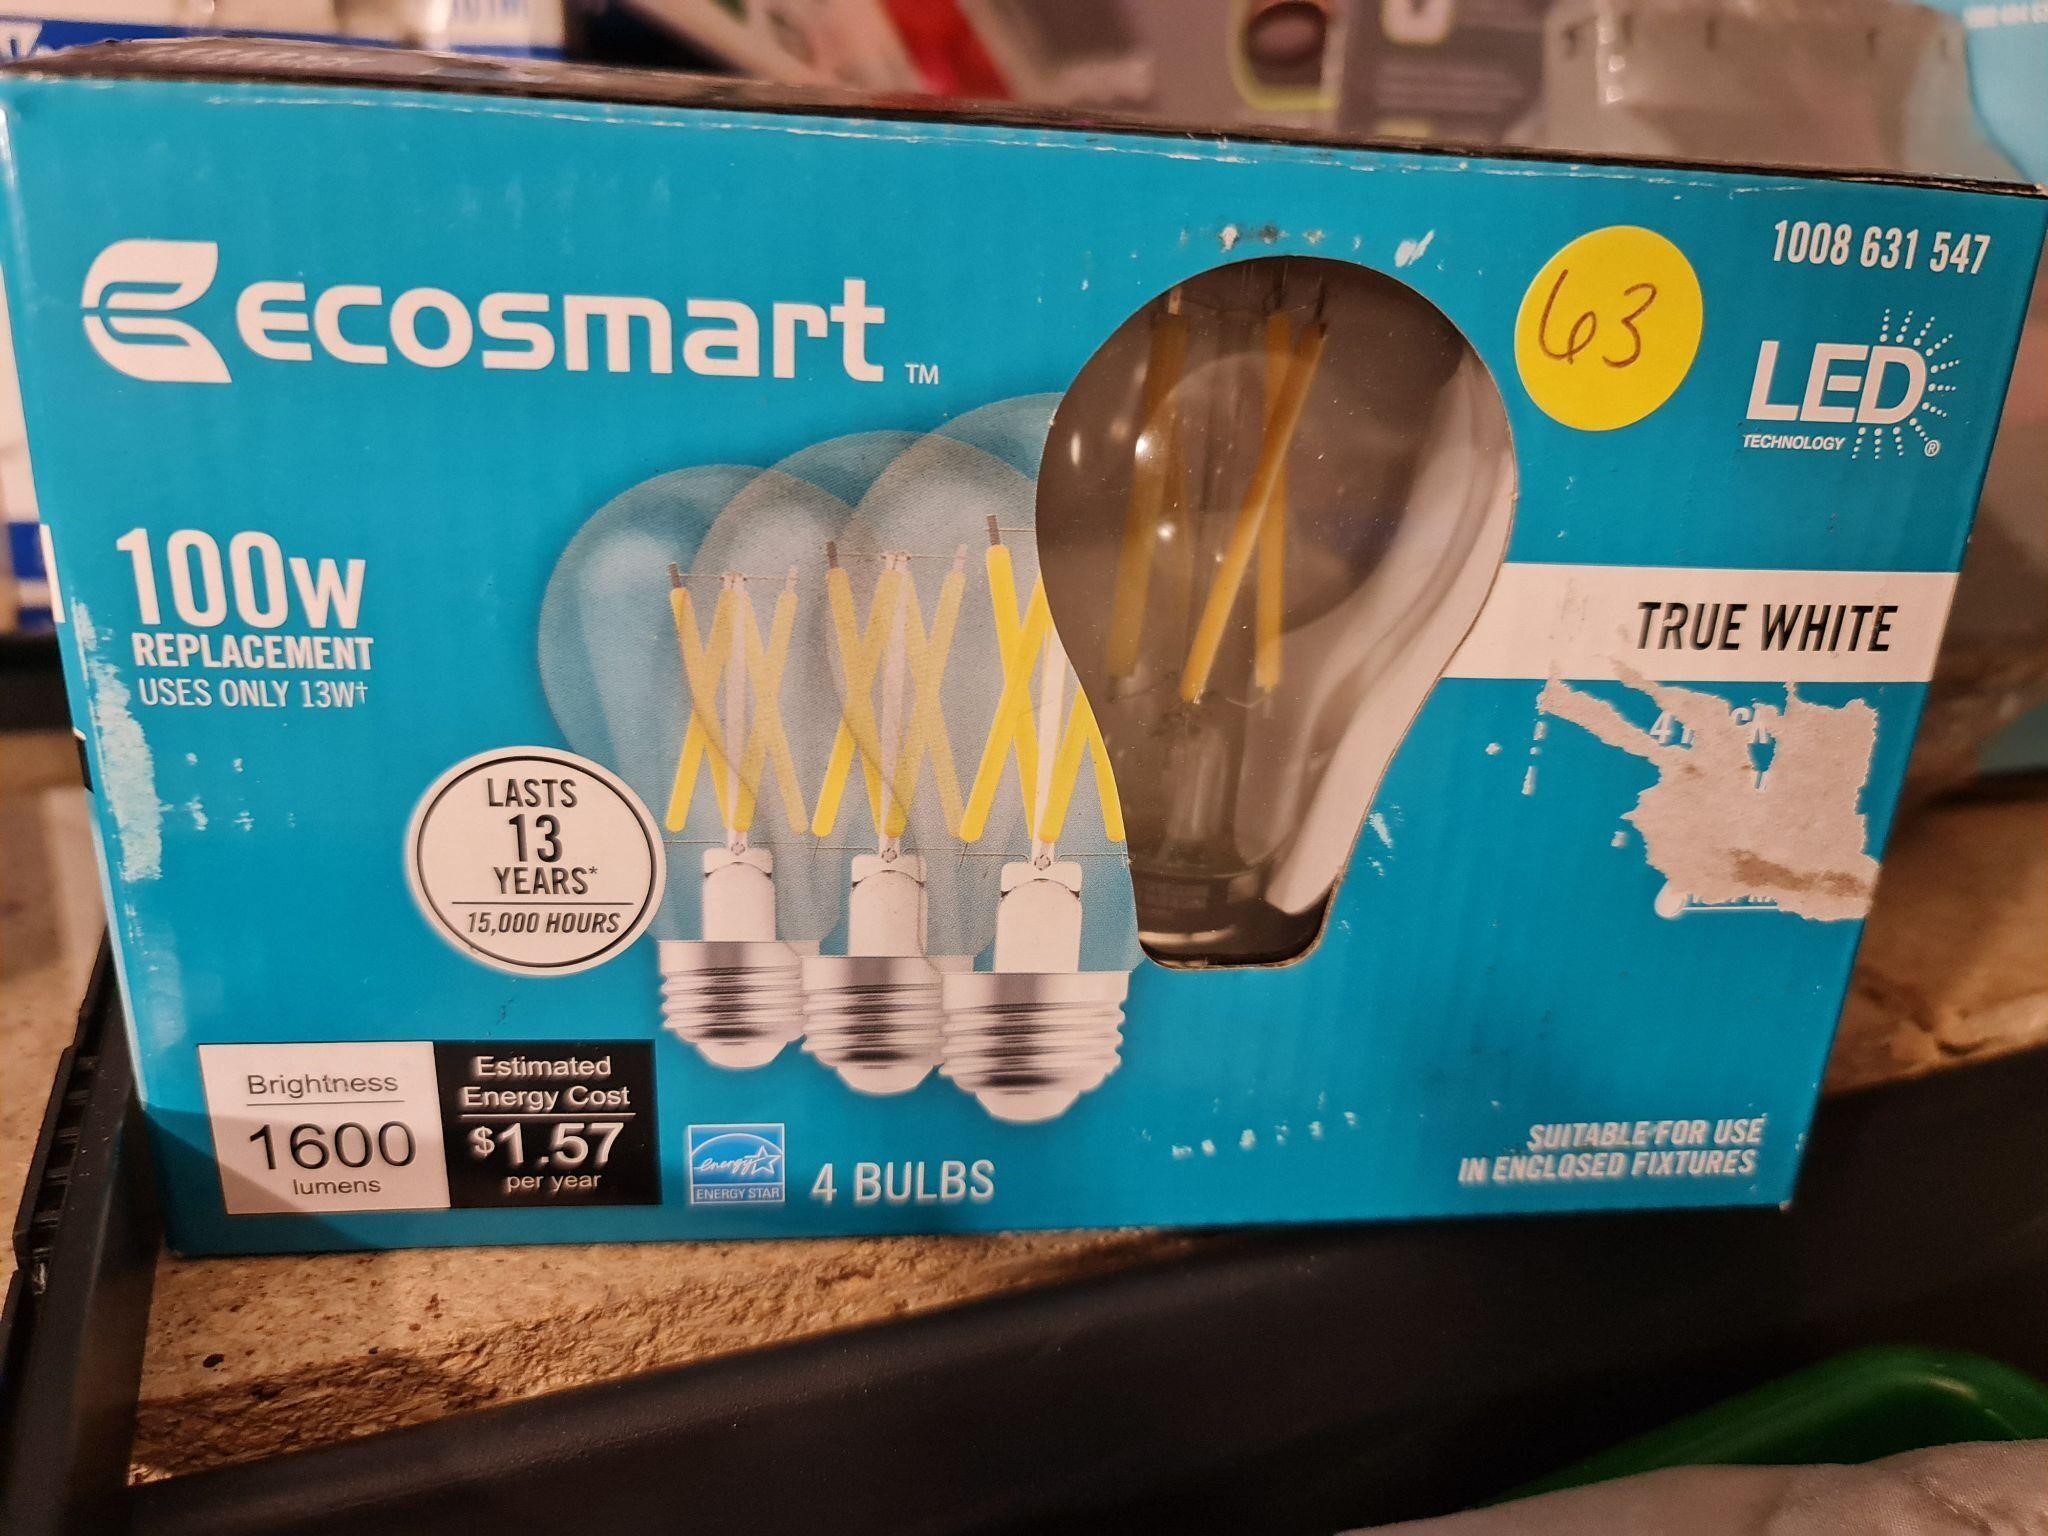 Ecosmart bulbs